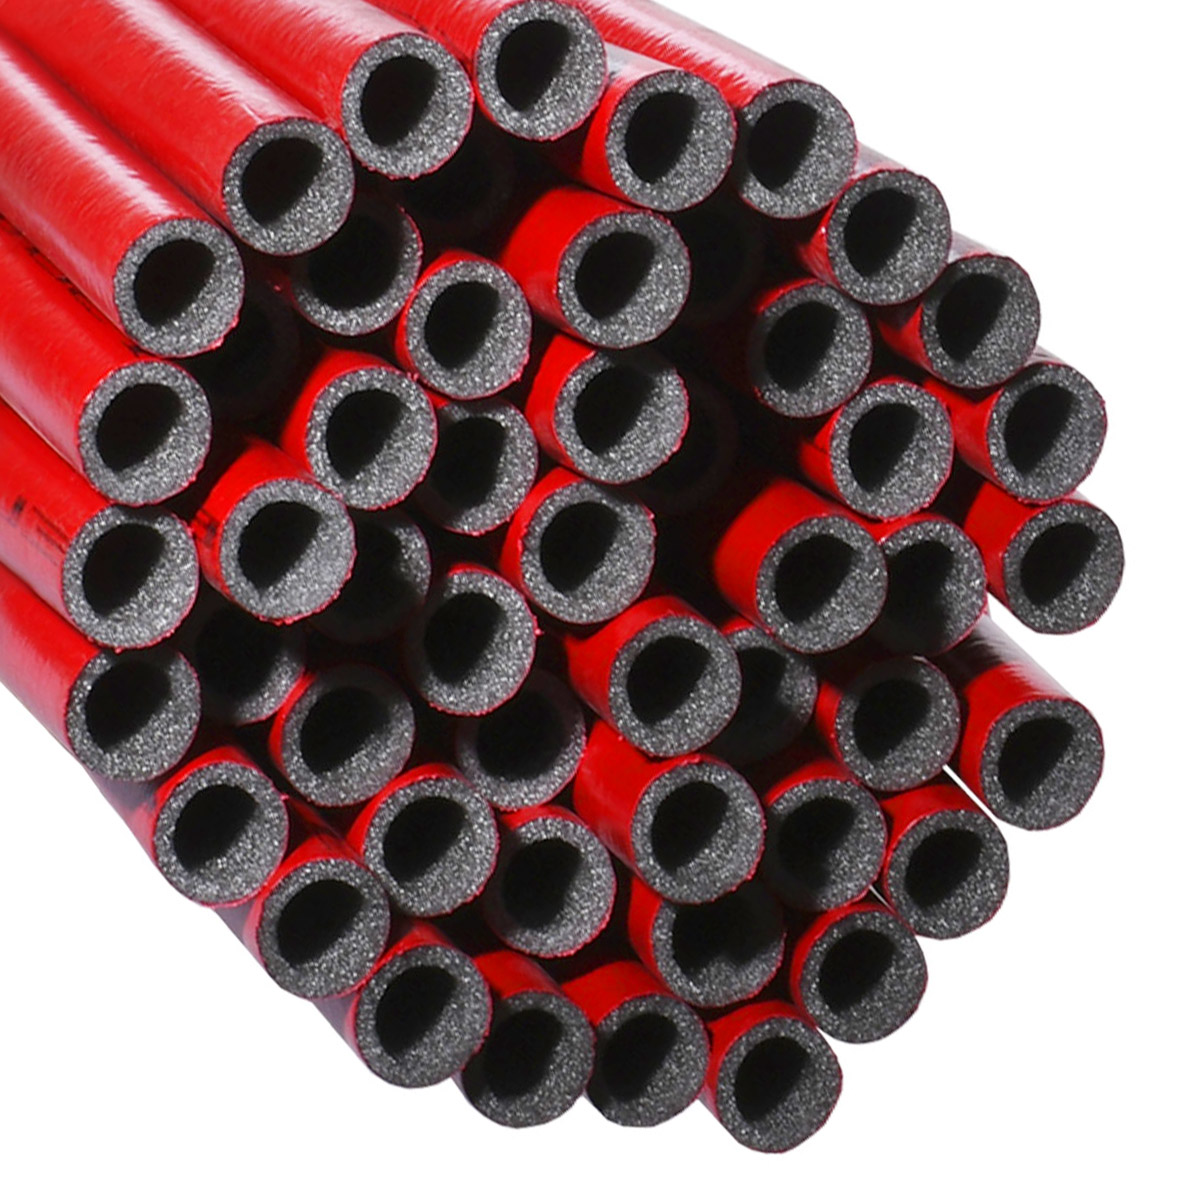 Утеплитель EXTRA красный для труб (6мм), ф18 ламинированный  Теплоизол